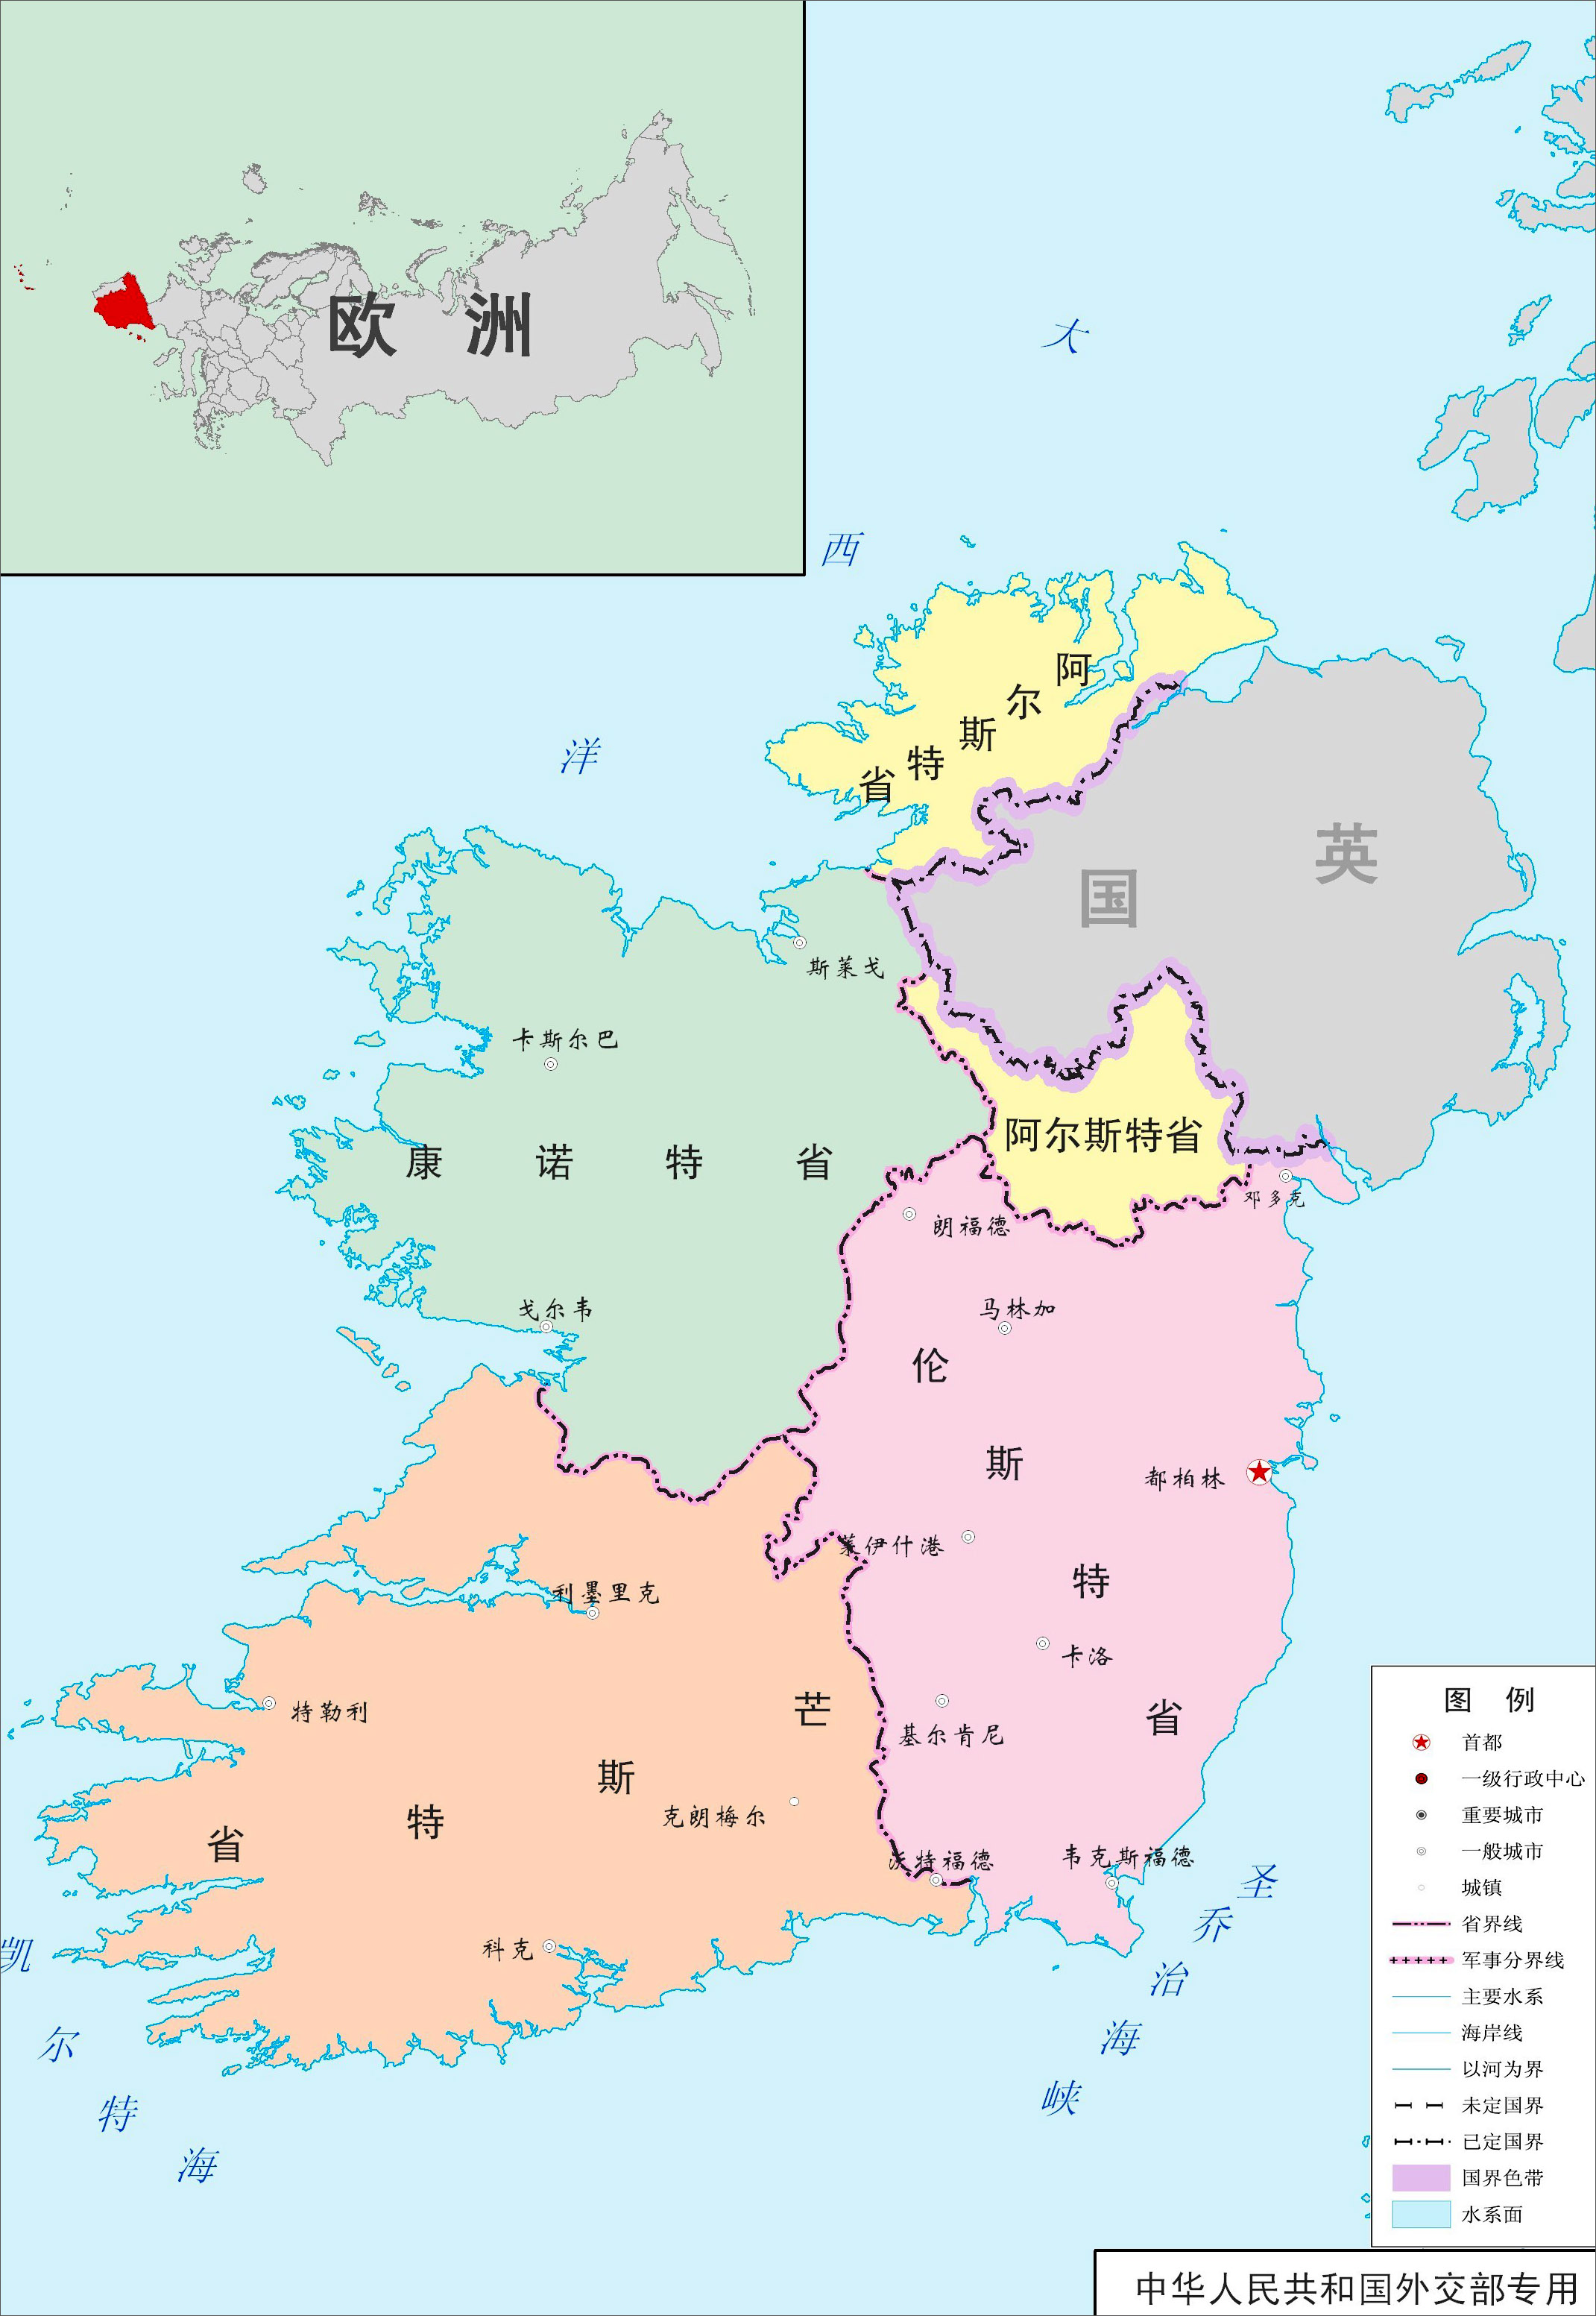 北爱尔兰首都地图图片